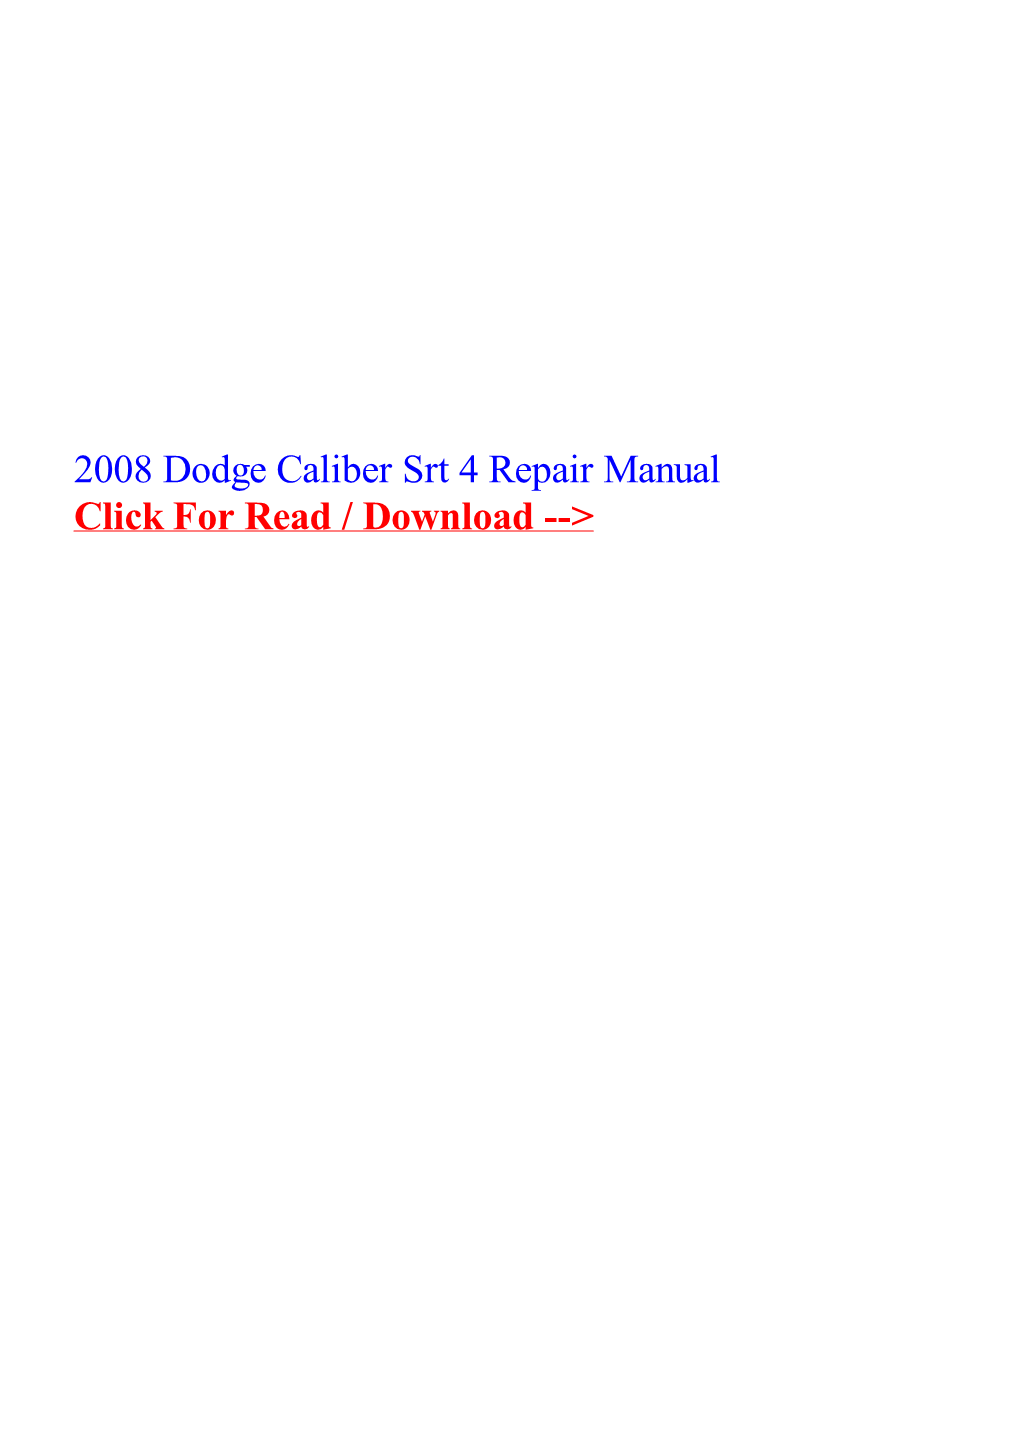 2008 Dodge Caliber Srt 4 Repair Manual